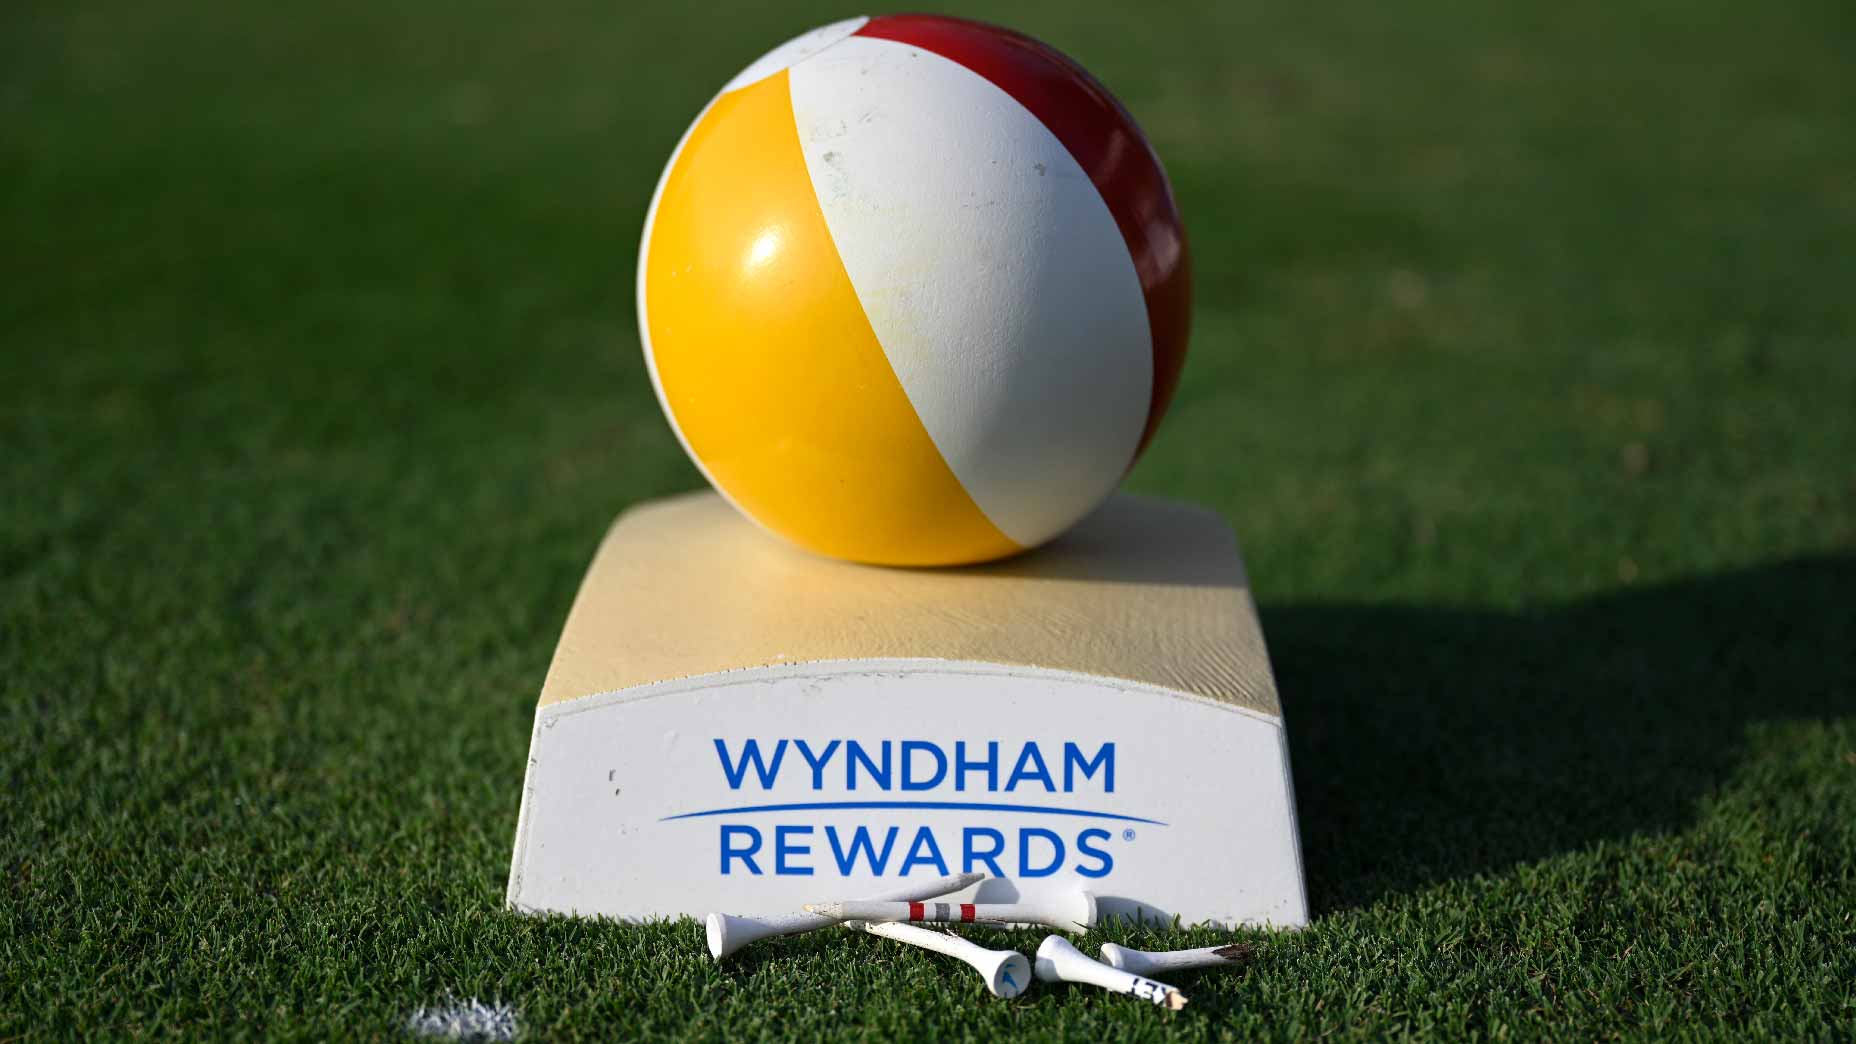 Wyndham Championship tee marker